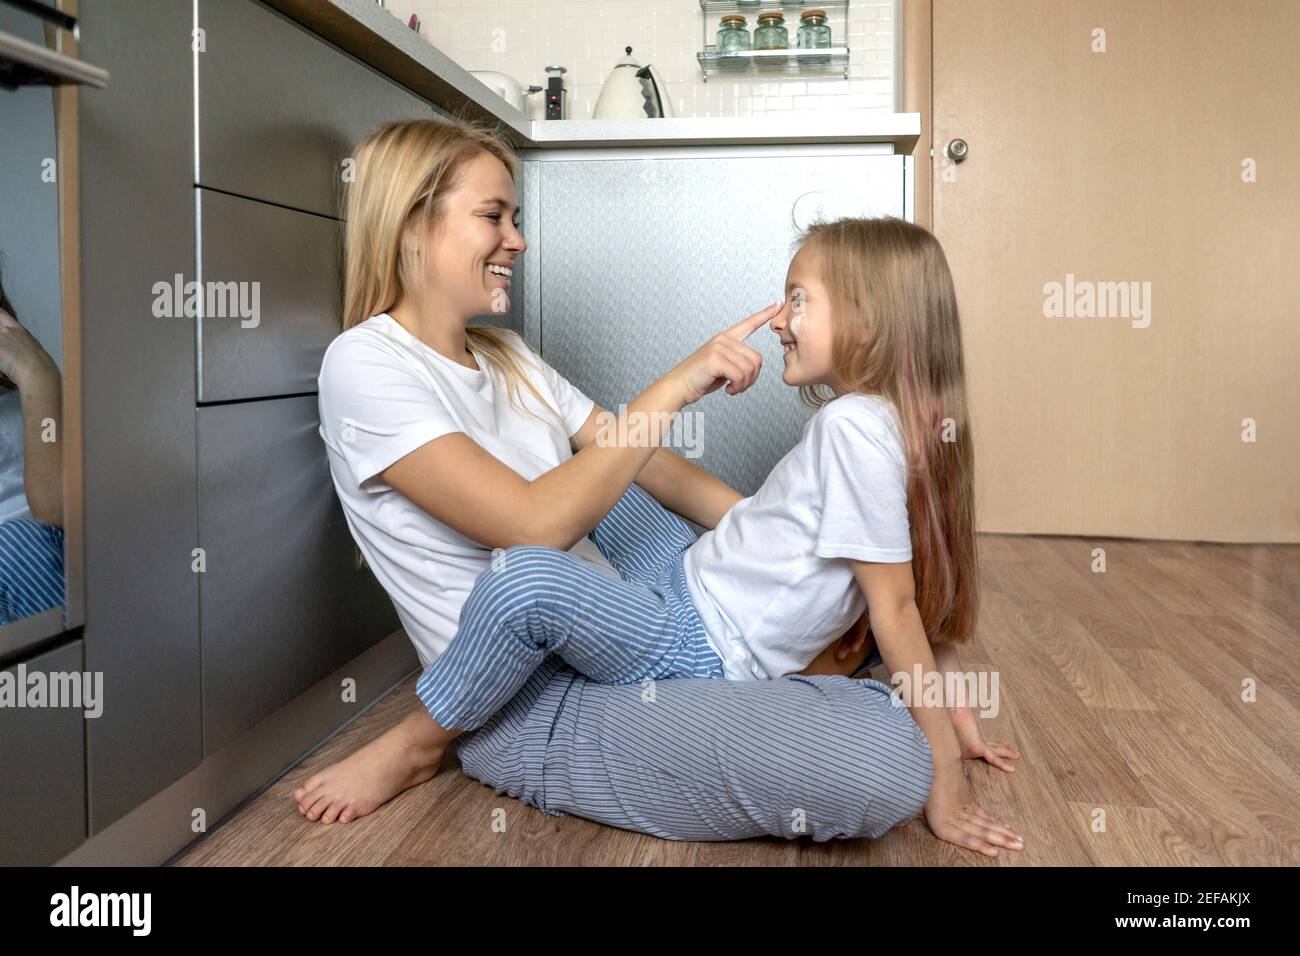 Frau mit kleinen Mädchen zu Hause in der Küche. Nahaufnahme Porträt, weiße T-Shorts. Mutter und Tochter haben einen Spaß, verwöhnen und lachen. Stockfoto